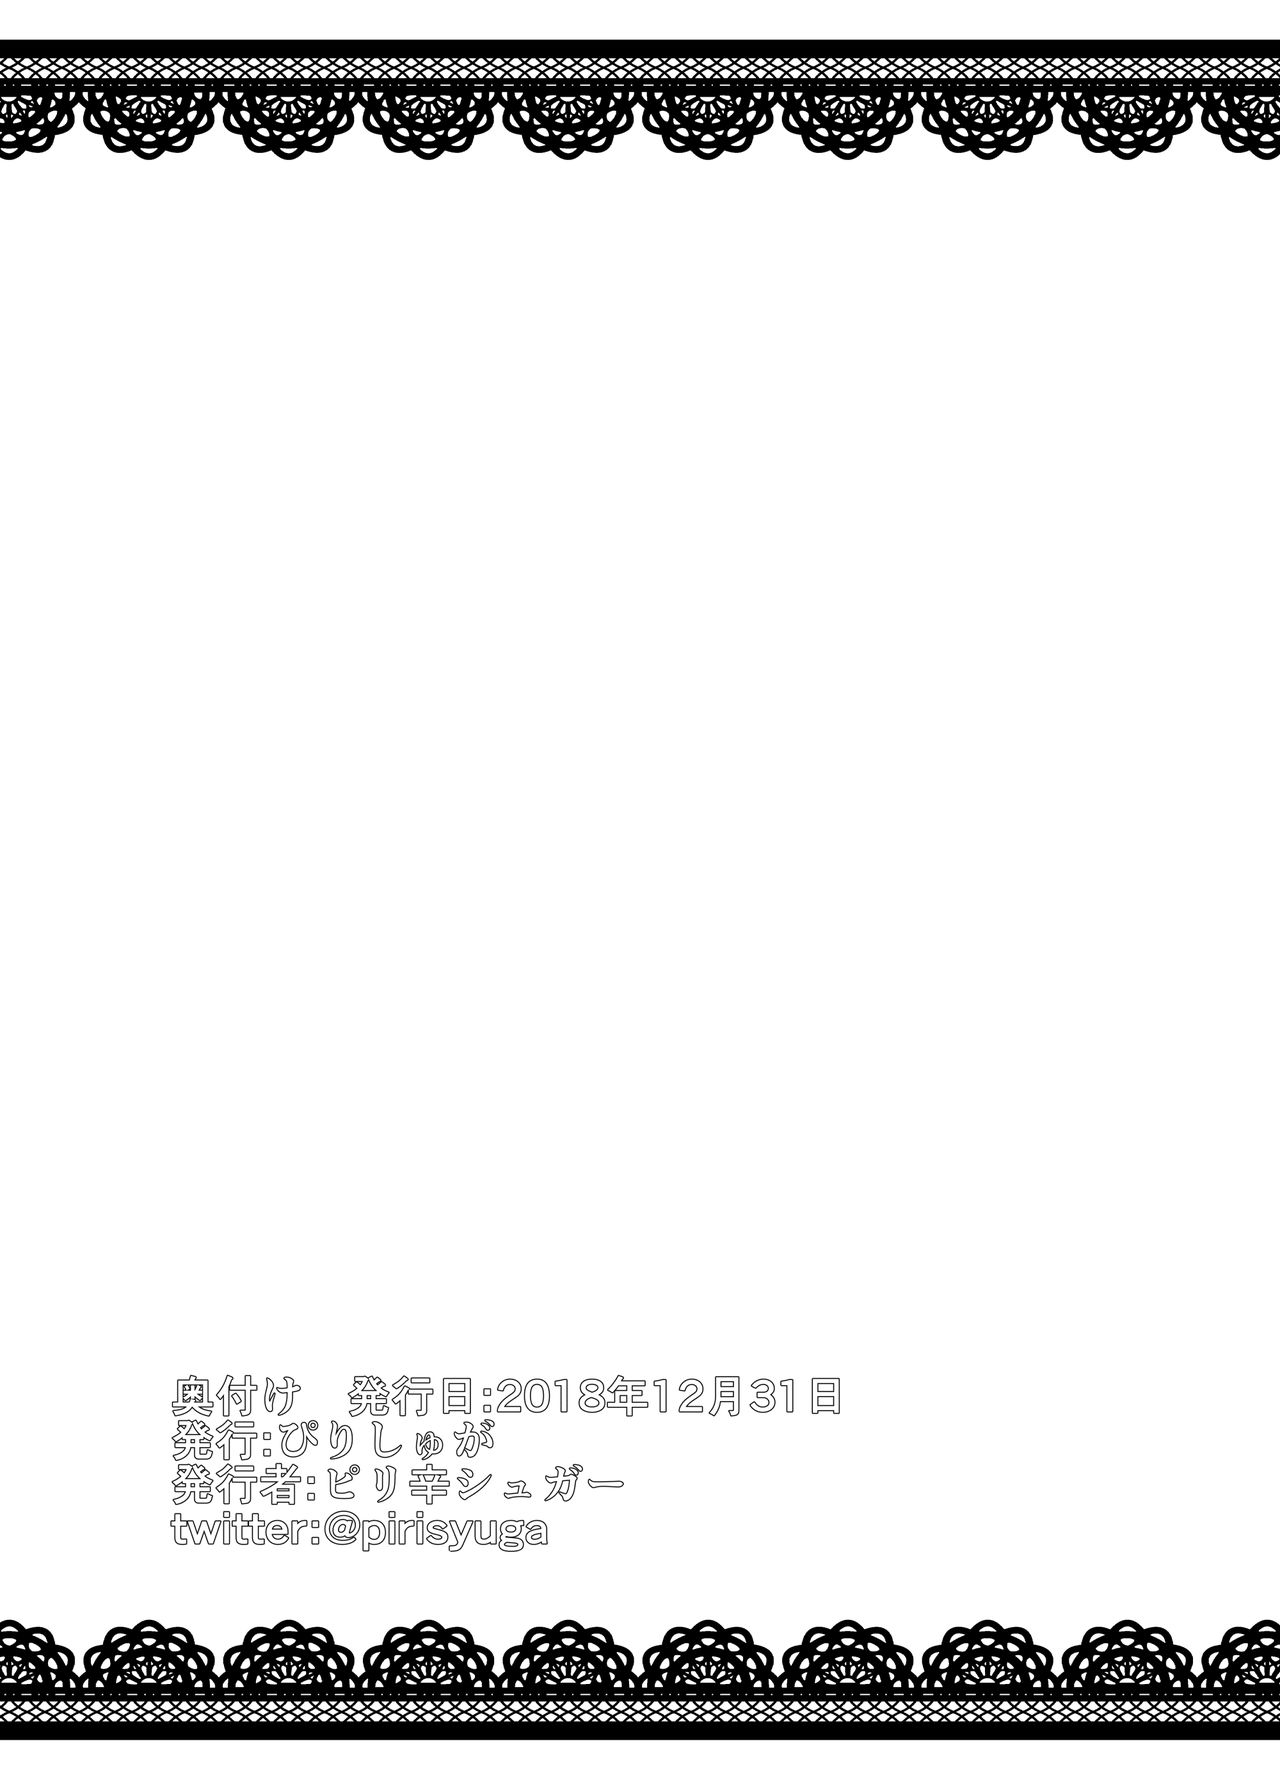 [ぴりしゅが (ピリ辛シュガー)] プロデューサーとエッチなメイドさん (アイドルマスター シンデレラガールズ) [DL版]